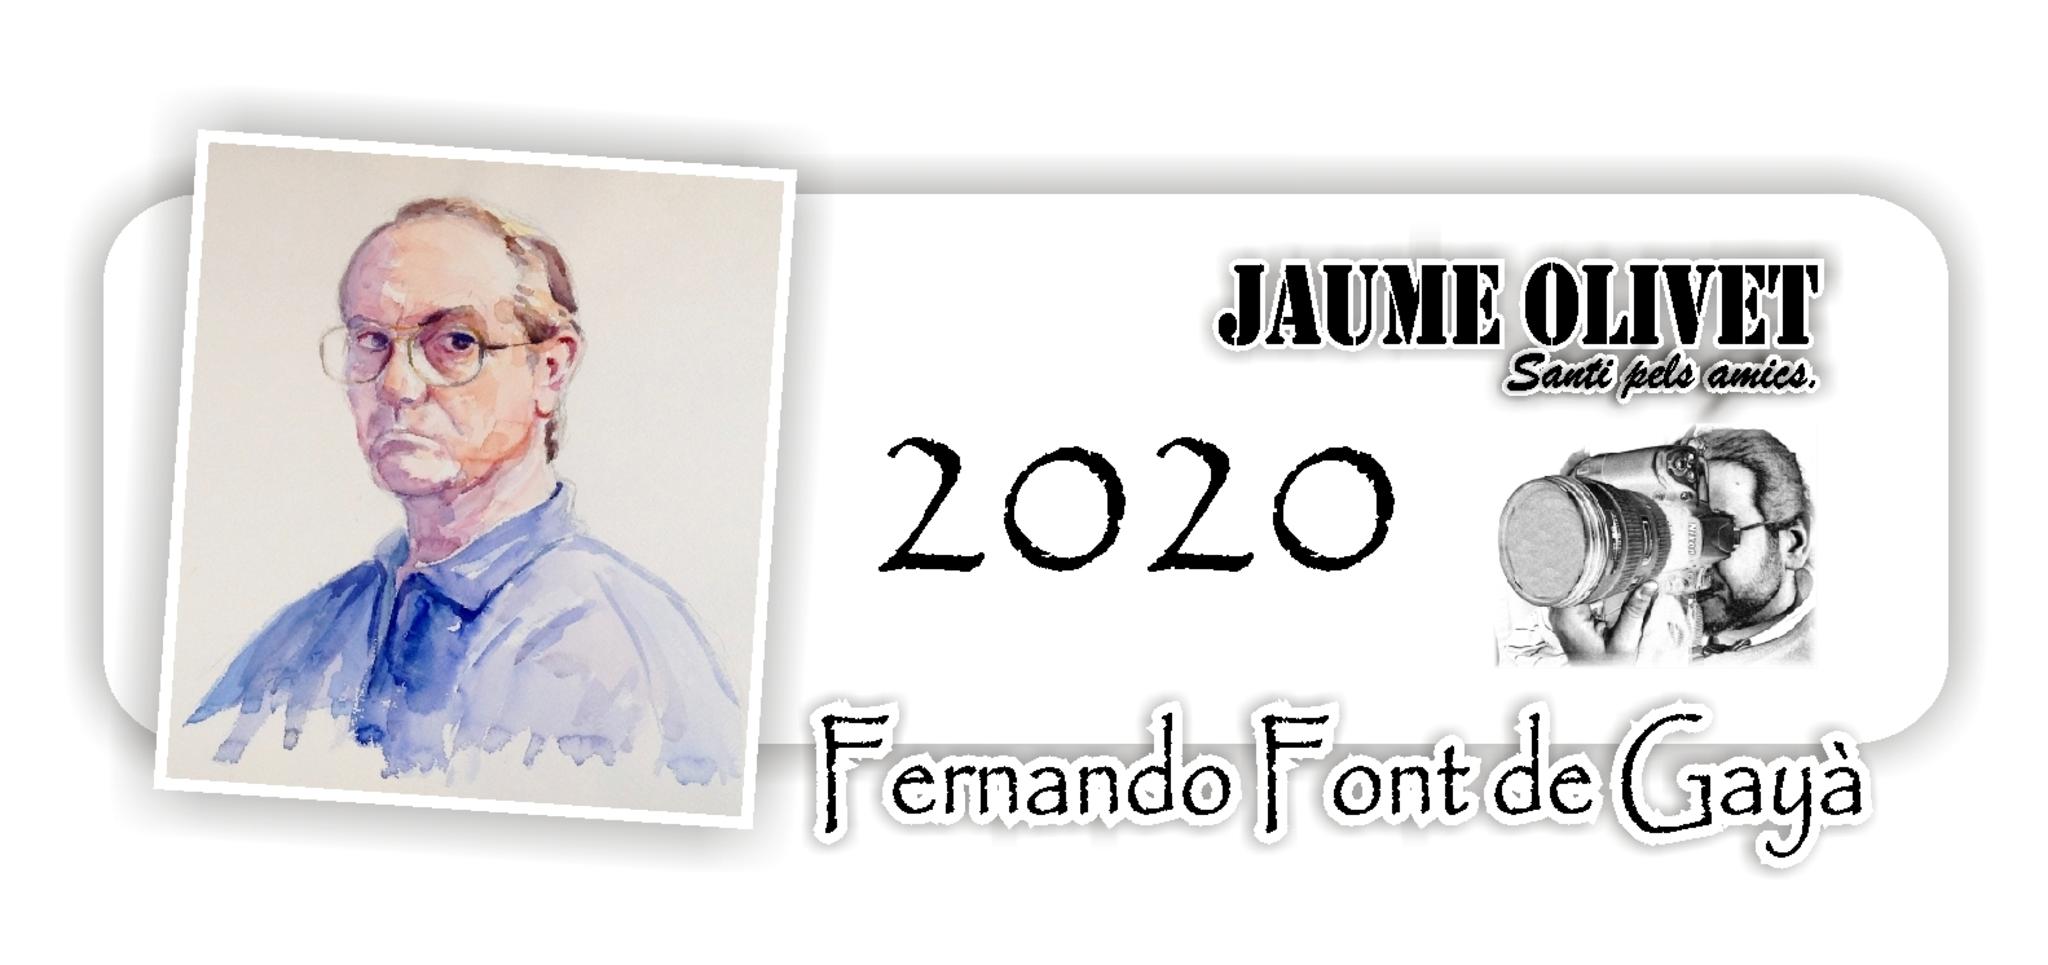 © Jaume Olivet 2021